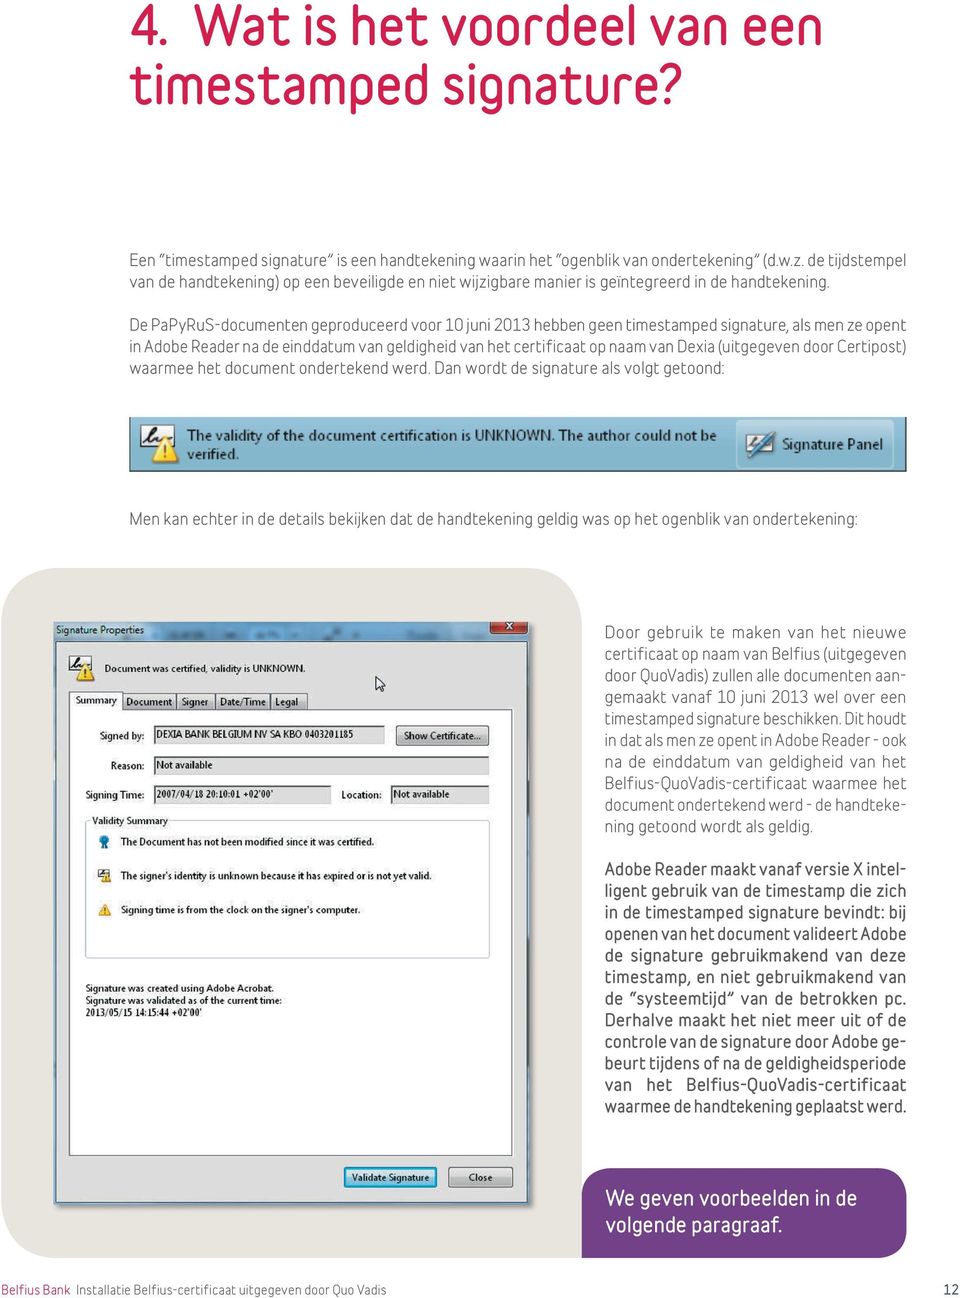 De PaPyRuS-documenten geproduceerd voor 10 juni 2013 hebben geen timestamped signature, als men ze opent in Adobe Reader na de einddatum van geldigheid van het certificaat op naam van Dexia